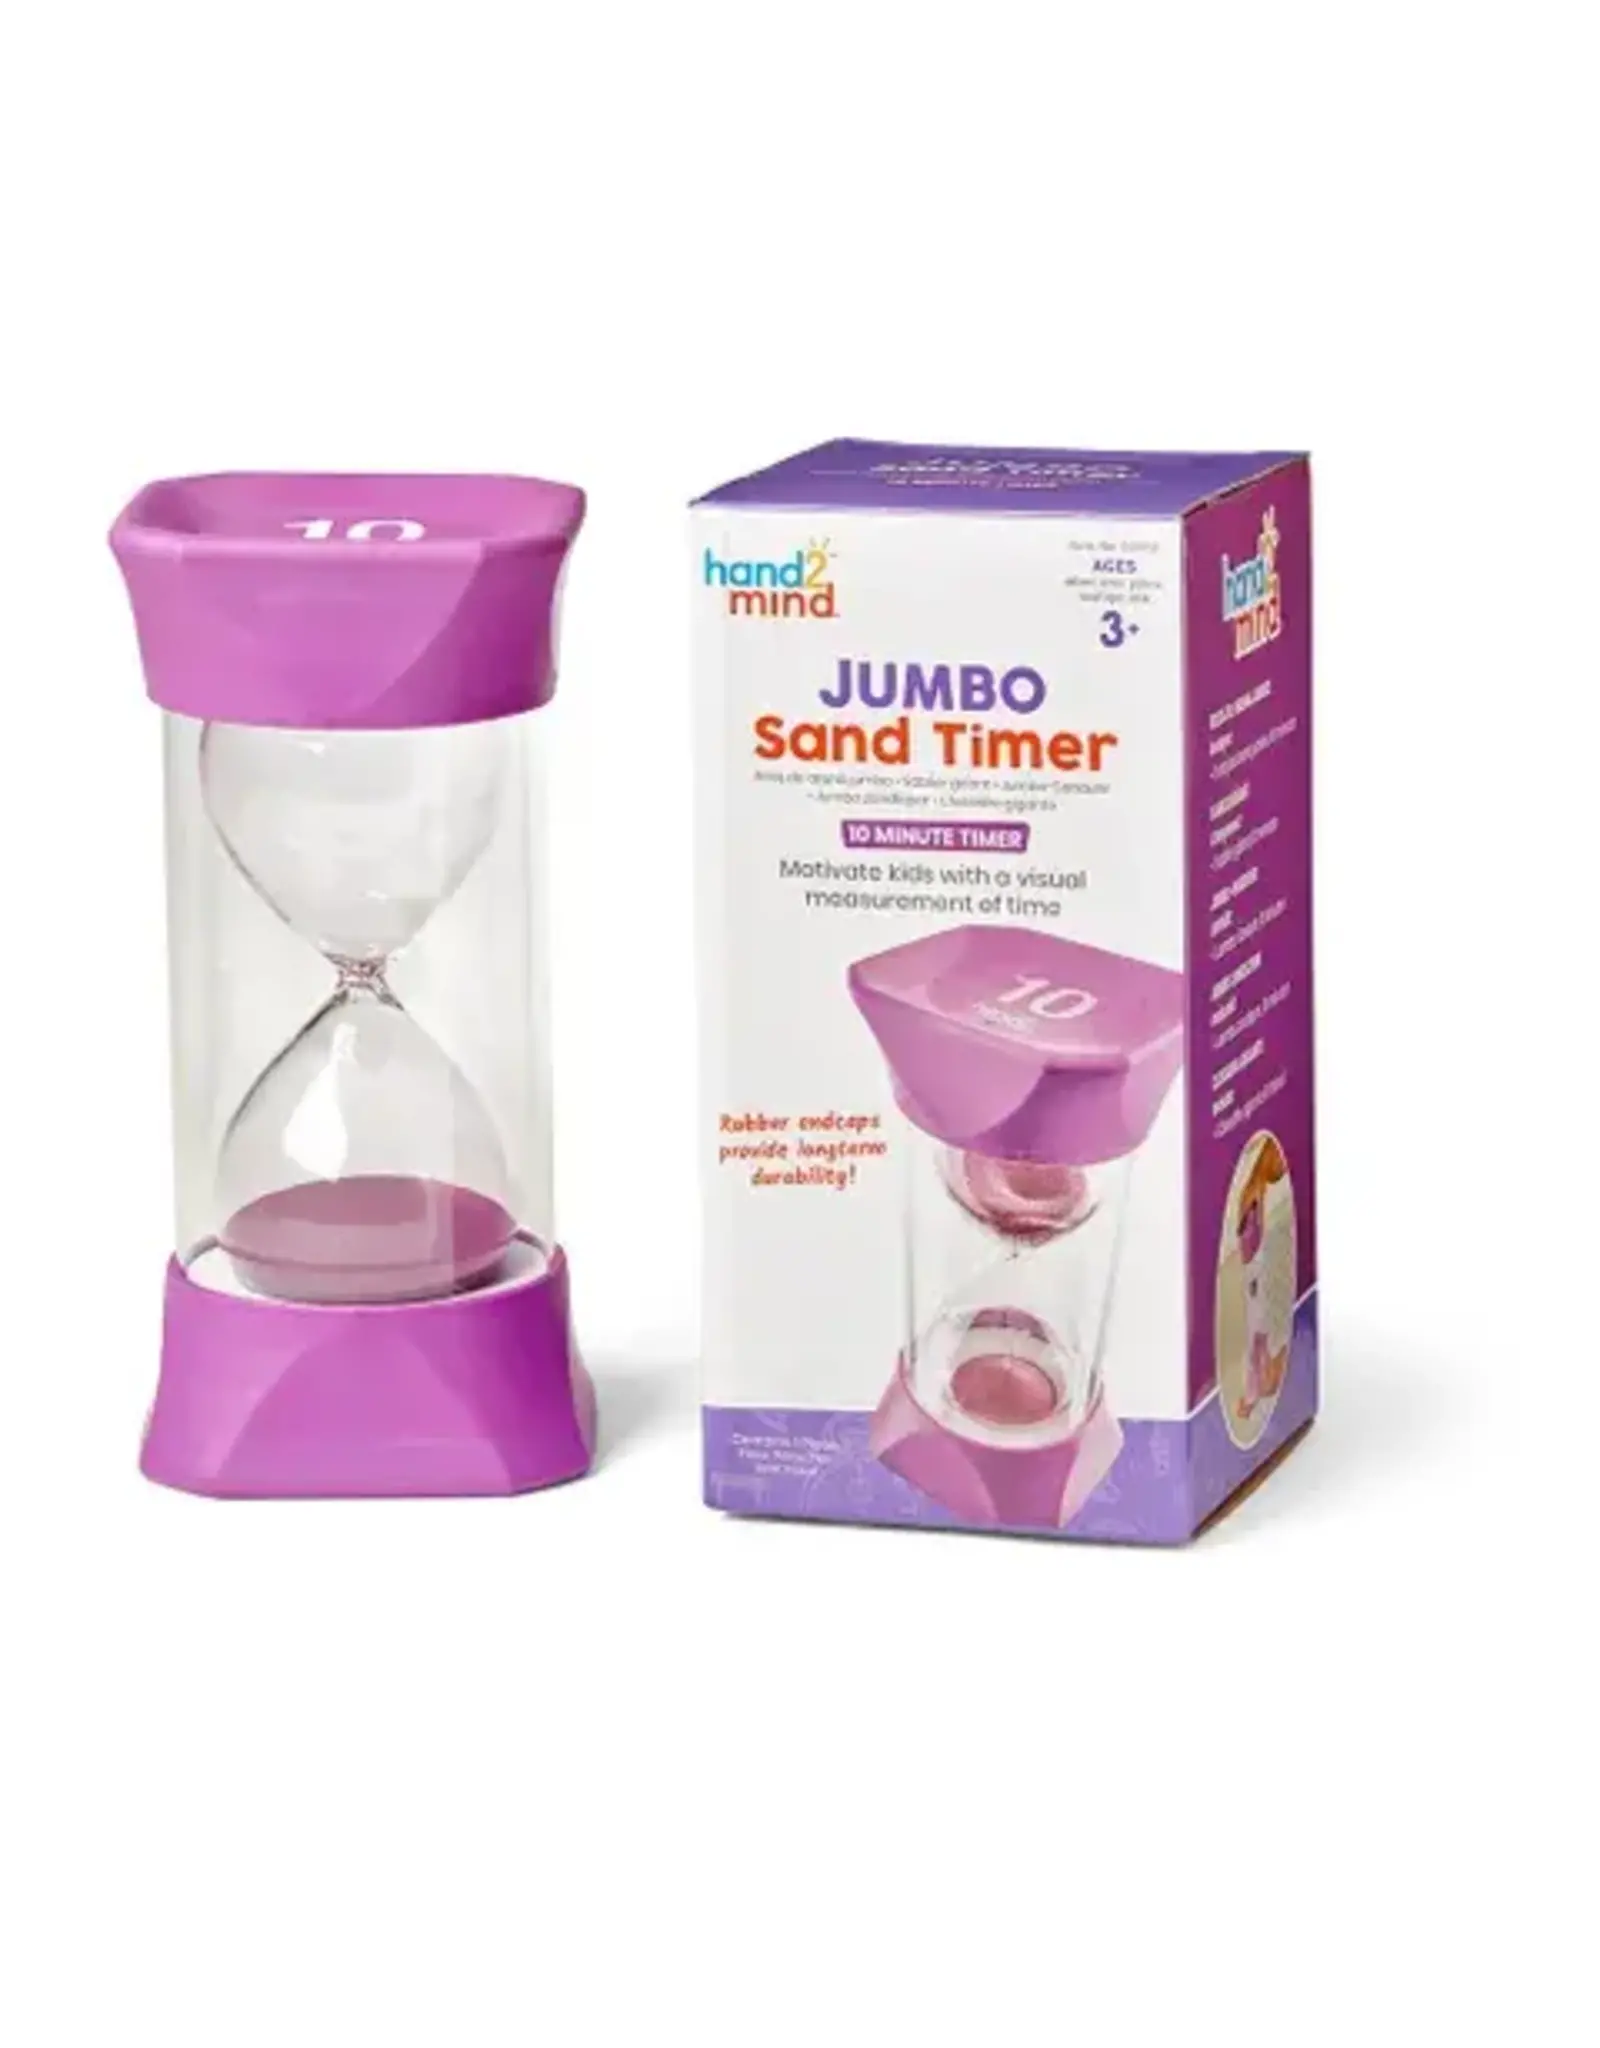 Hand2Mind Jumbo Sand Timer 10 Minutes